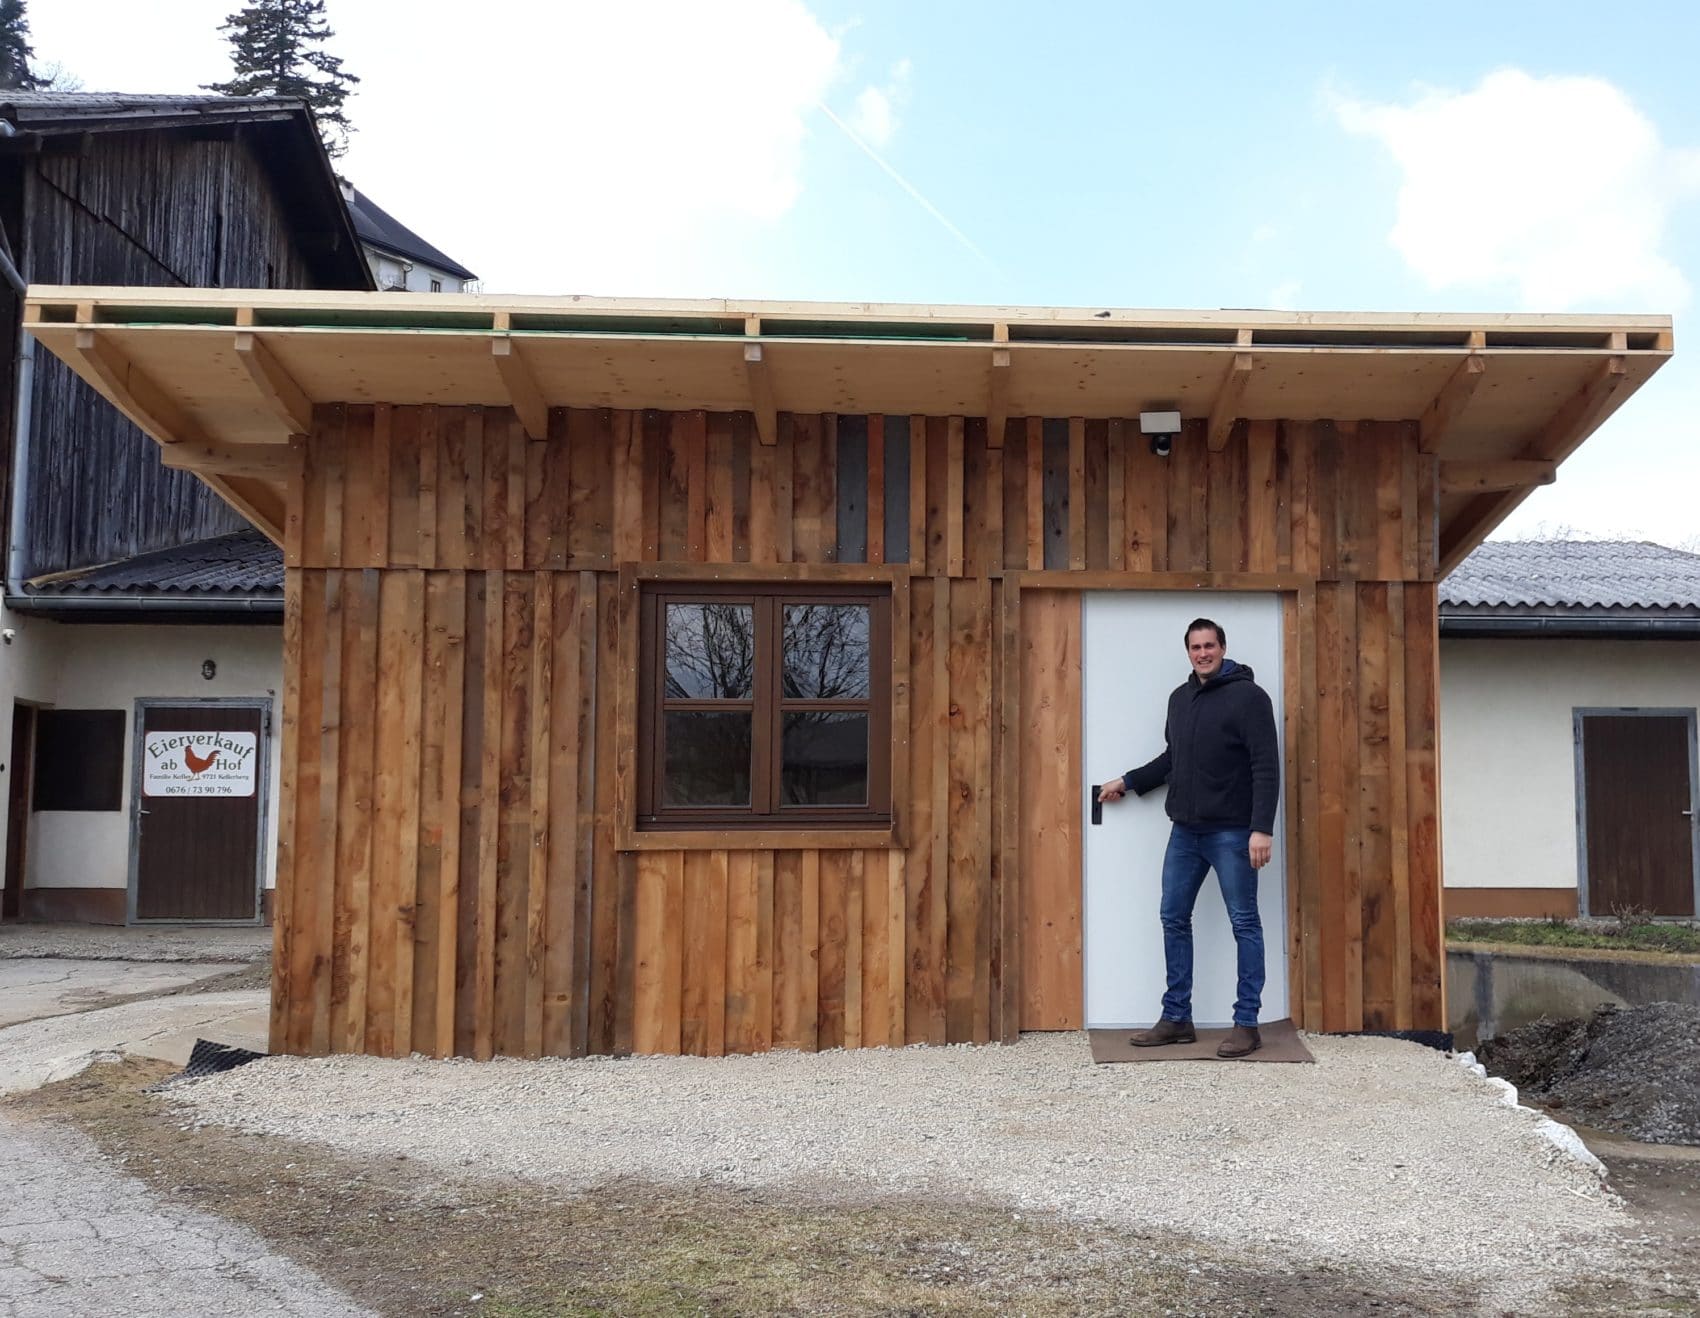 Im Dezember startete Christian Kofler die Planung der Hütte mit dem Selbstbedienungsautomaten. Am 16. März wird sie eröffnet.